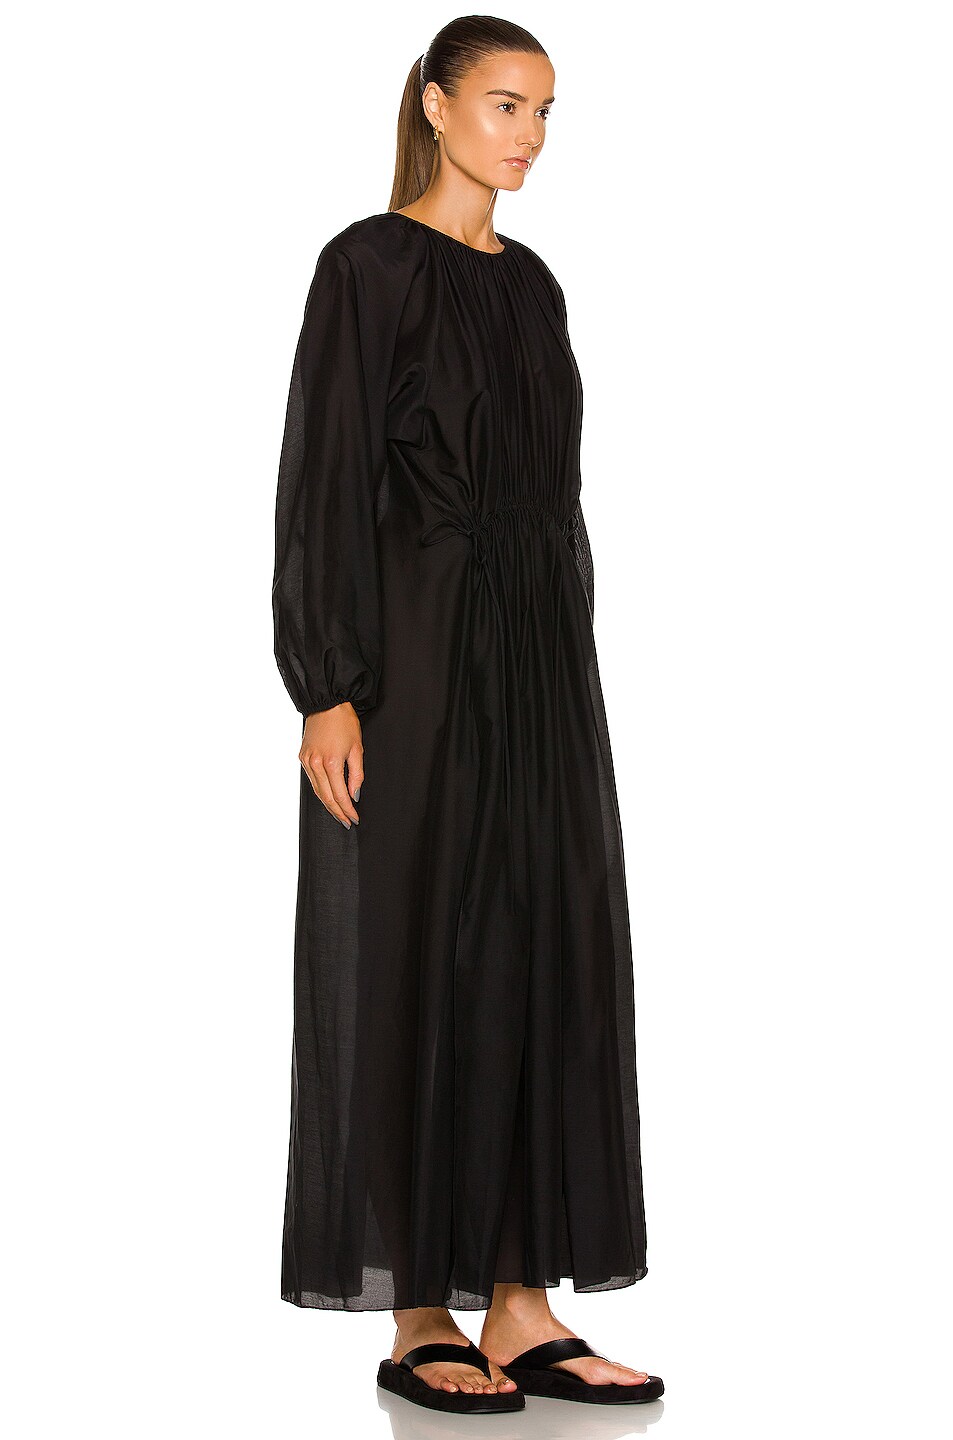 Matteau Channel Side Split Dress in Black | FWRD